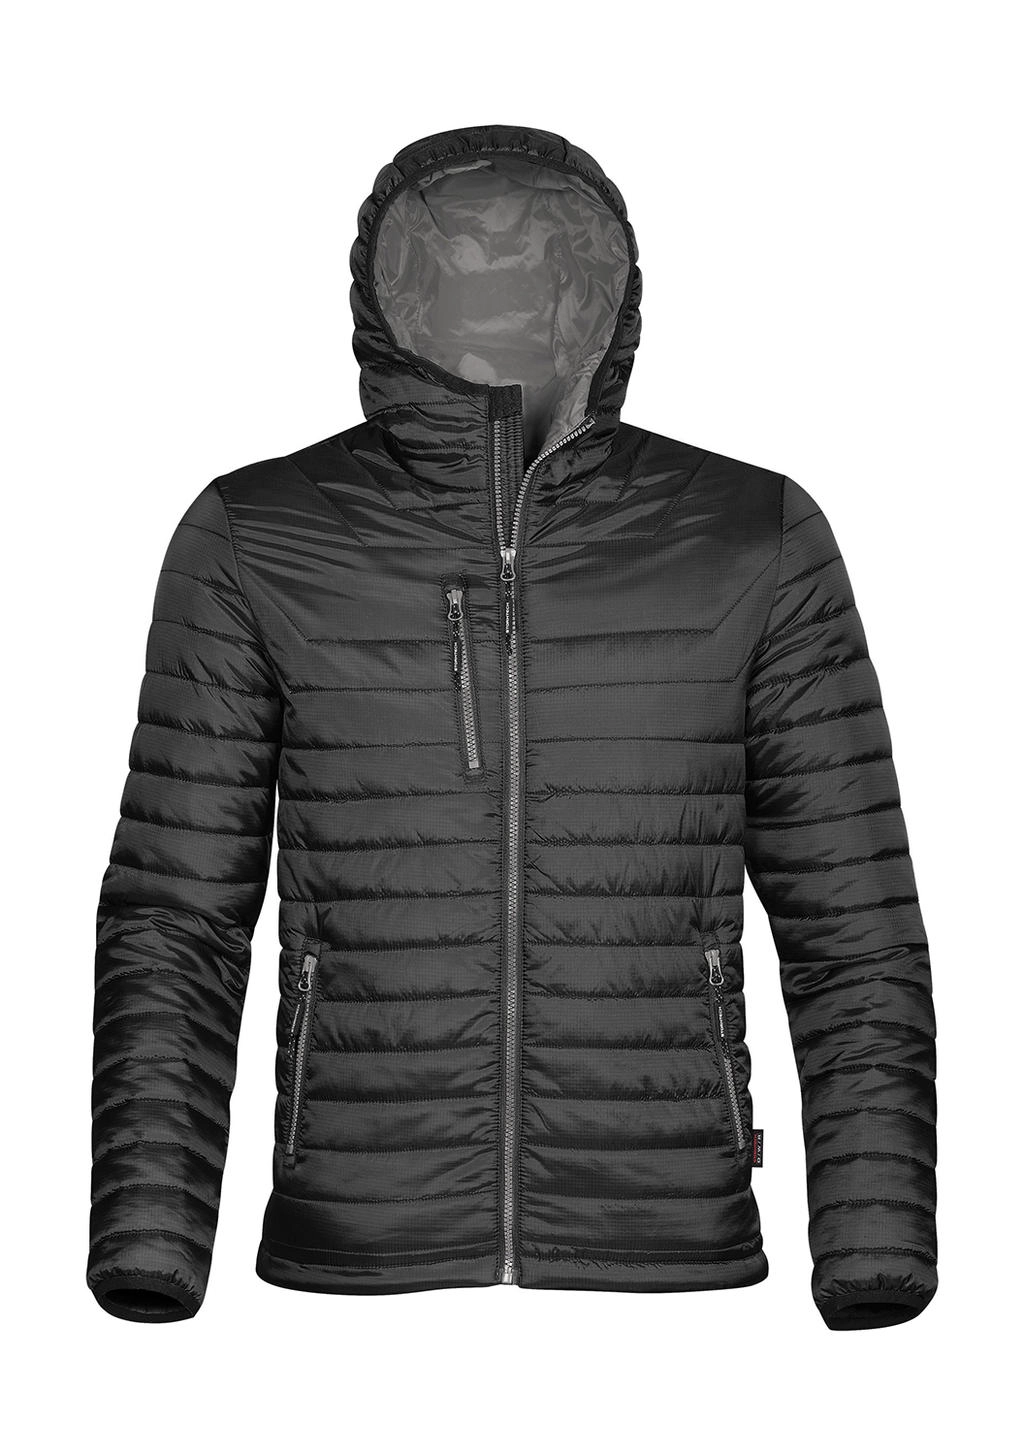 Gravity Thermal Jacket zum Besticken und Bedrucken in der Farbe Black/Charcoal mit Ihren Logo, Schriftzug oder Motiv.